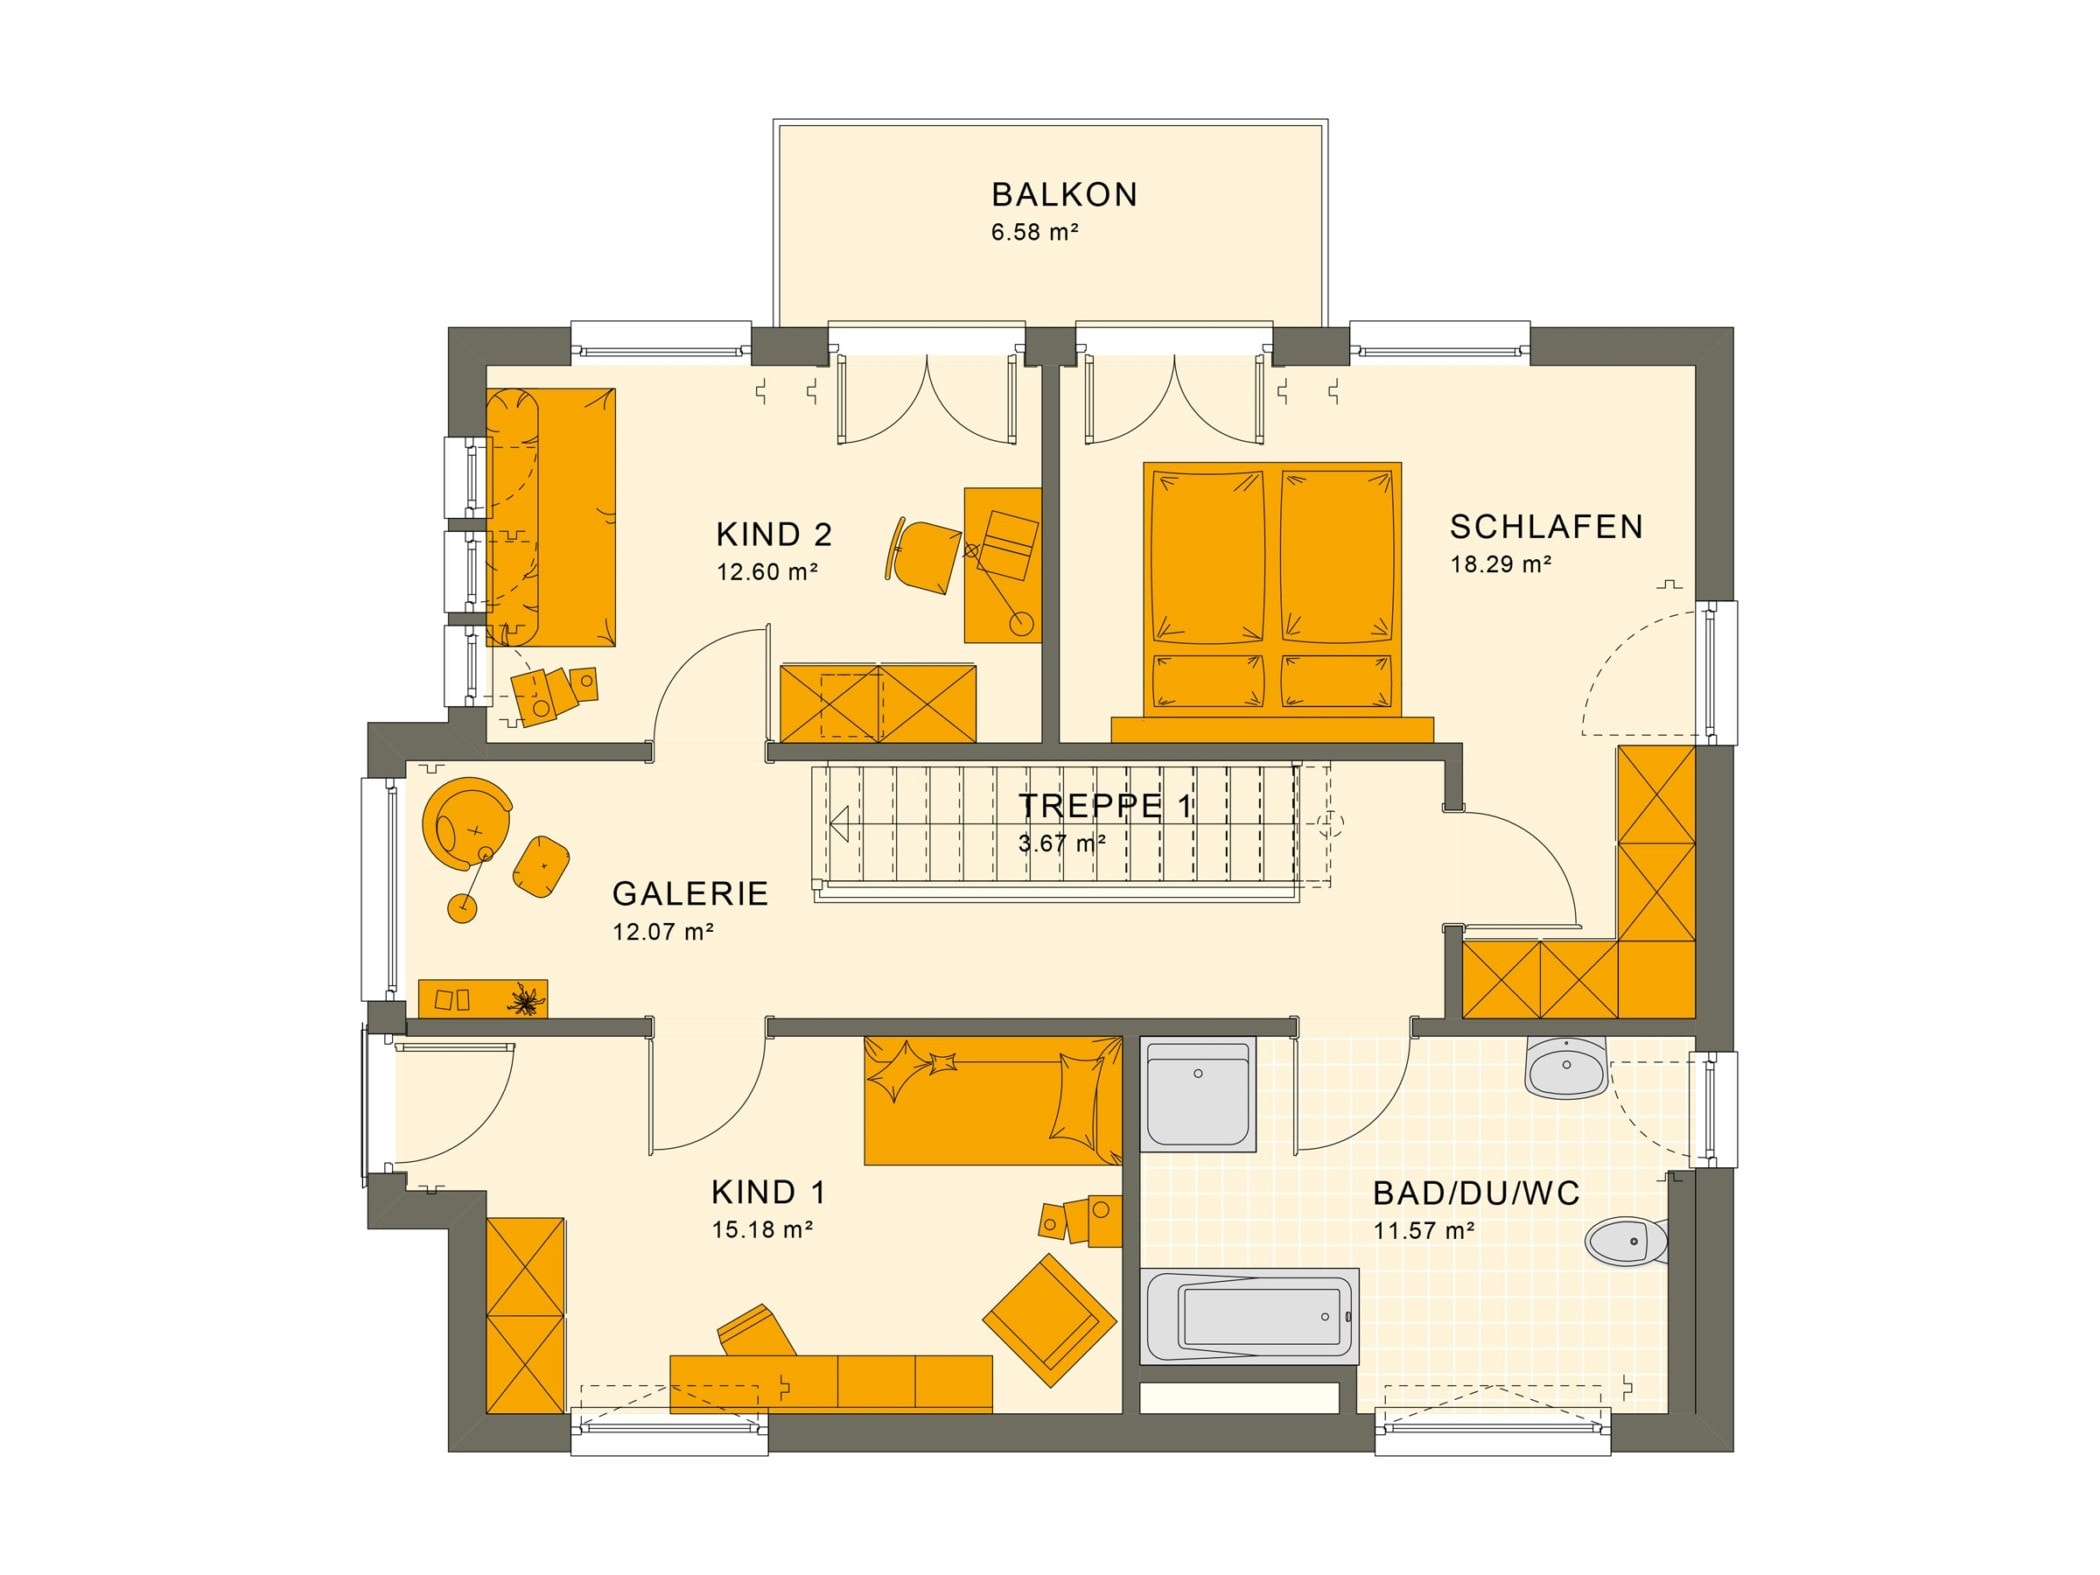 Grundriss Stadtvilla Obergeschoss mit Flachdach, Treppe gerade mit Galerie & Balkon, 5 Zimmer, 140 qm - Fertighaus Living Haus SUNSHINE 144 V7 - HausbauDirekt.de